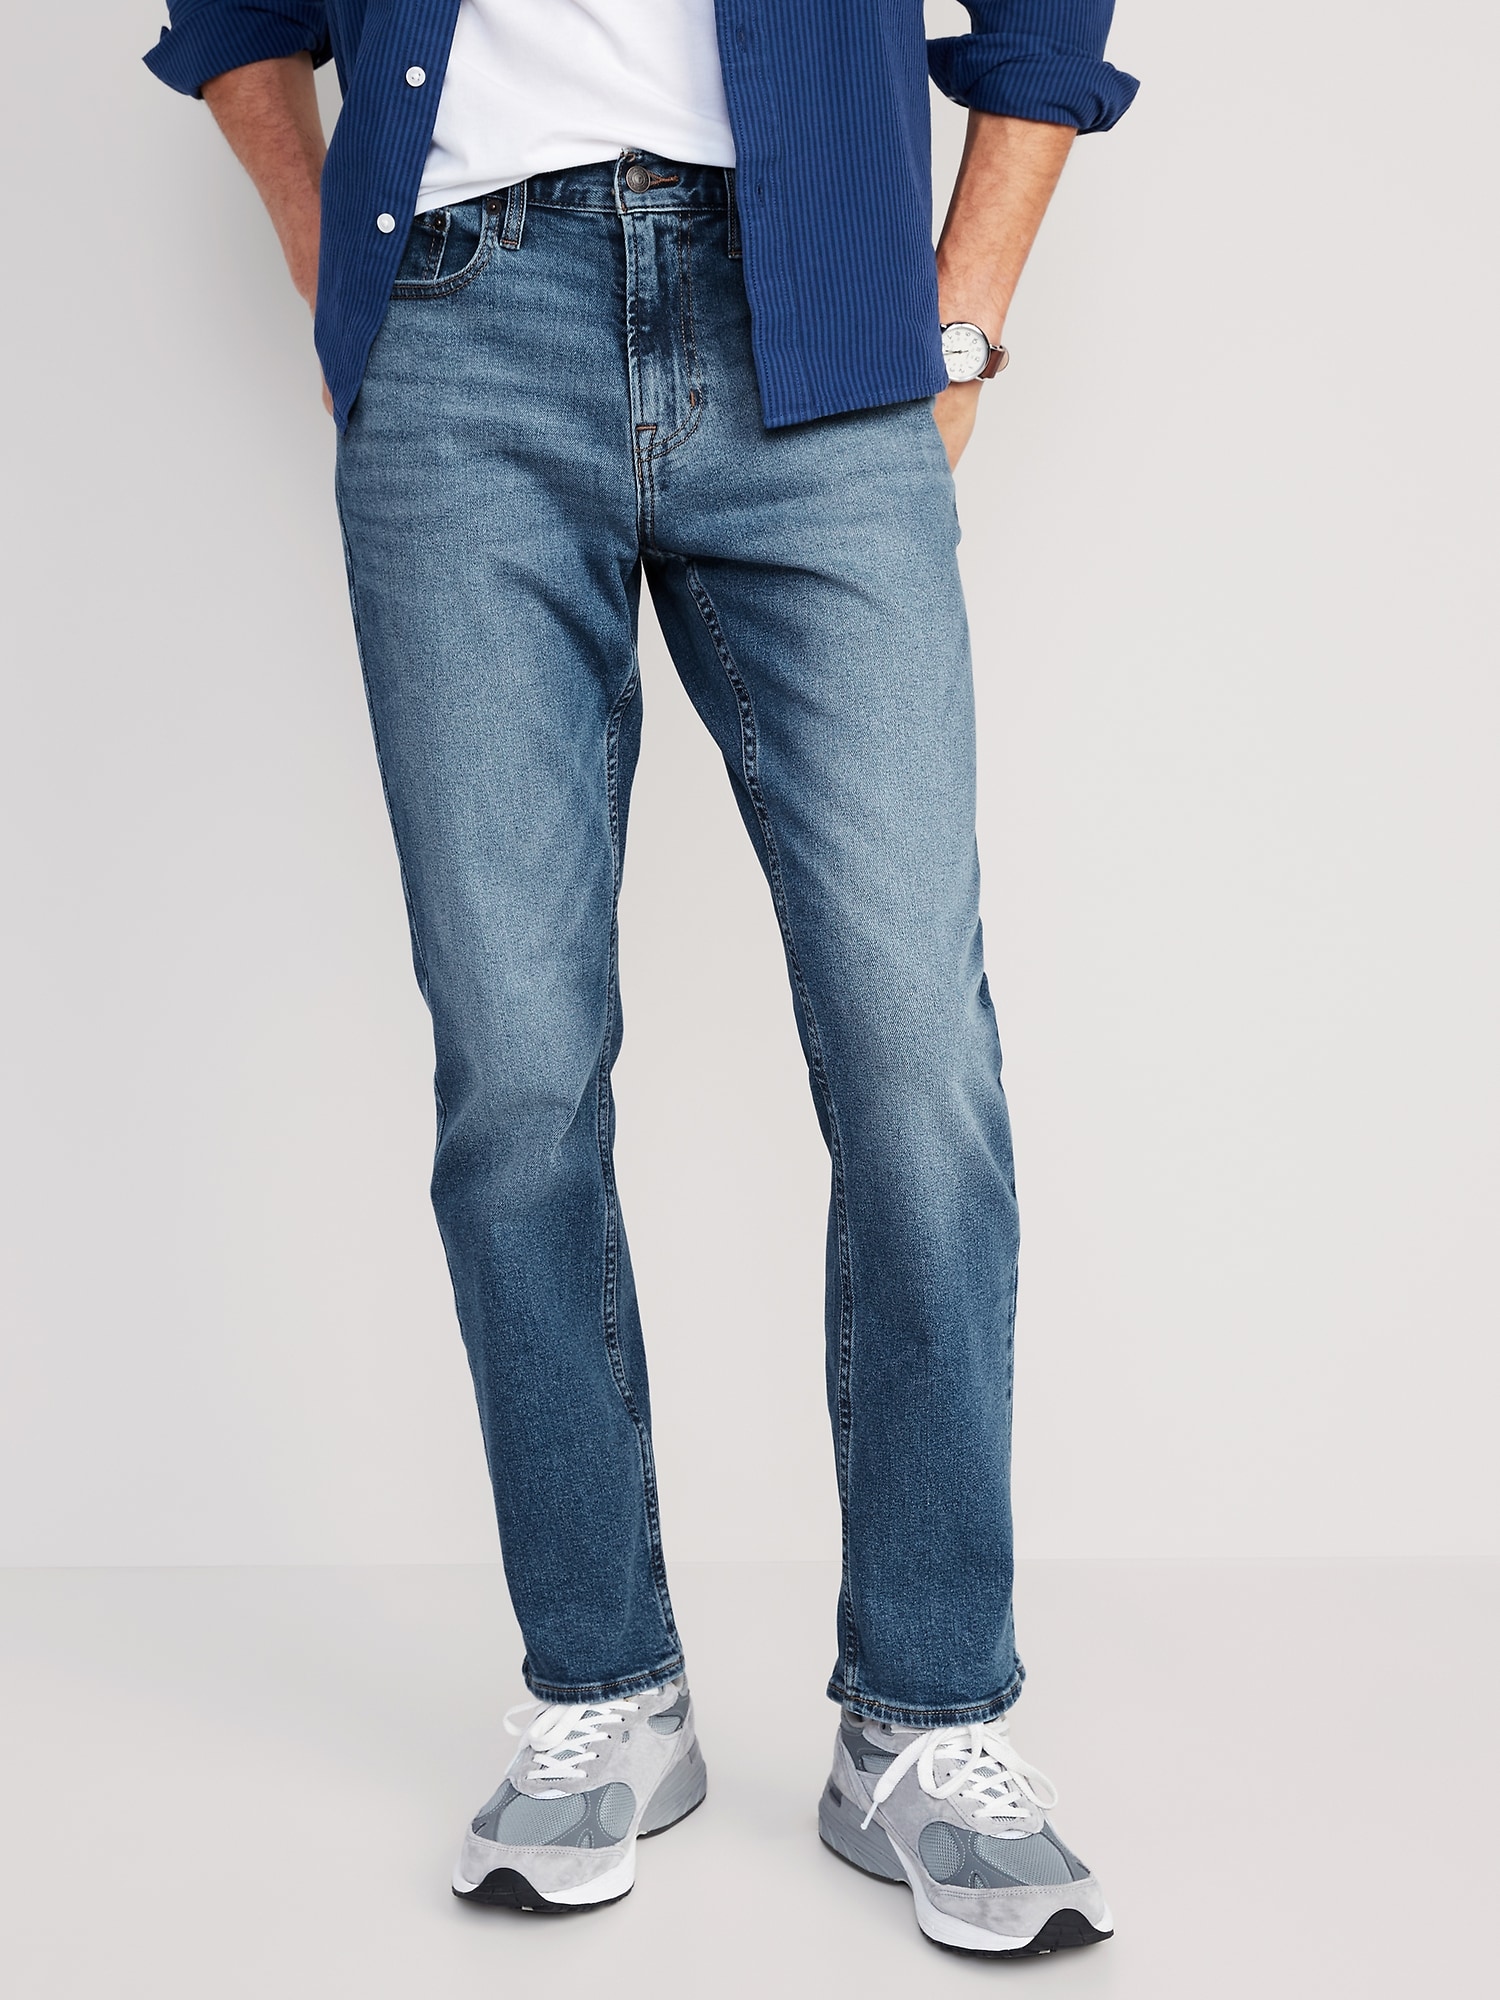 Gap Regular Slim Jeans for Men